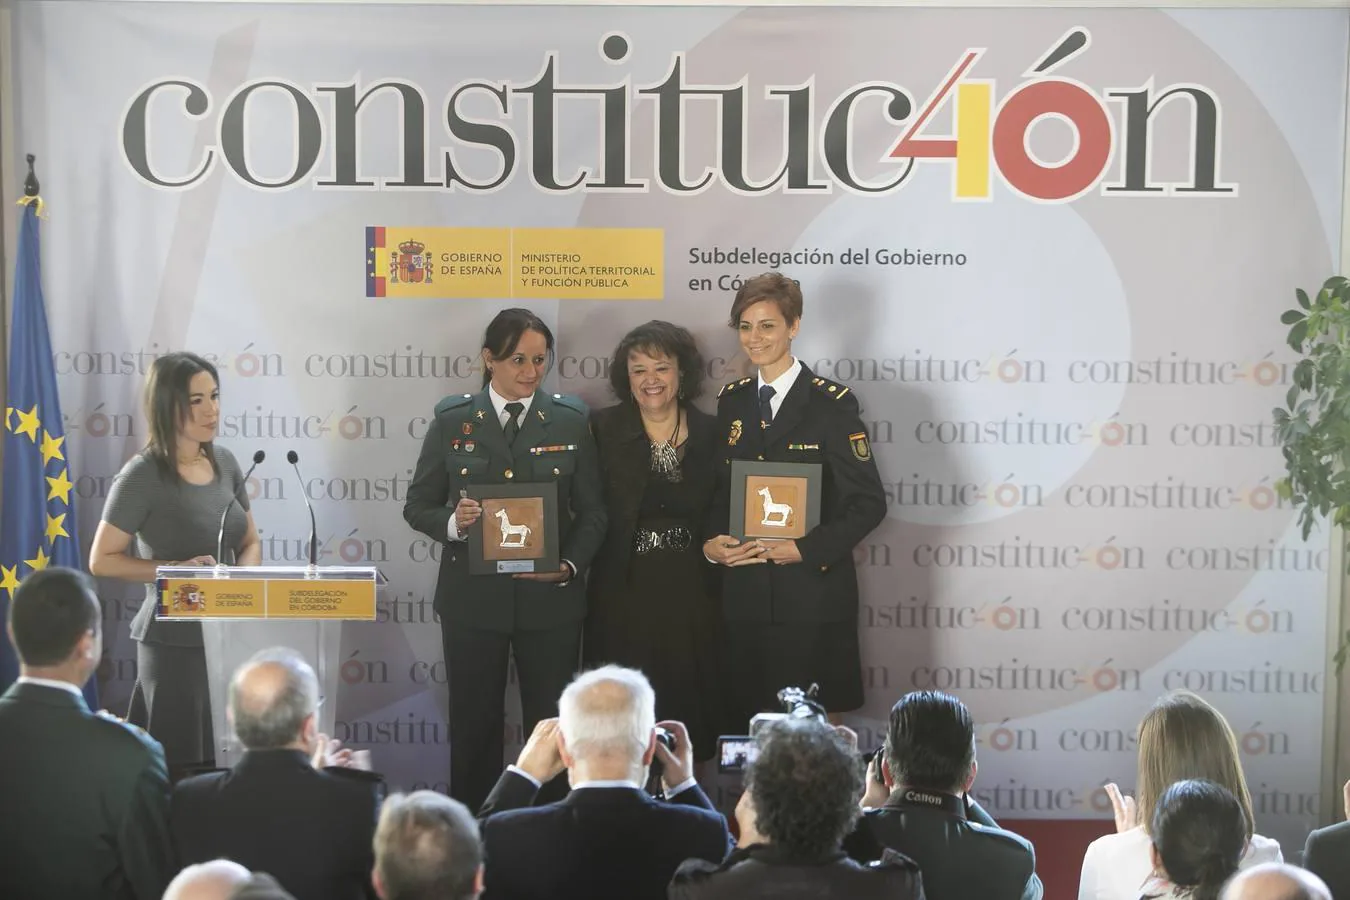 La celebración de los 40 años de la Constitución en Córdoba, en imágenes